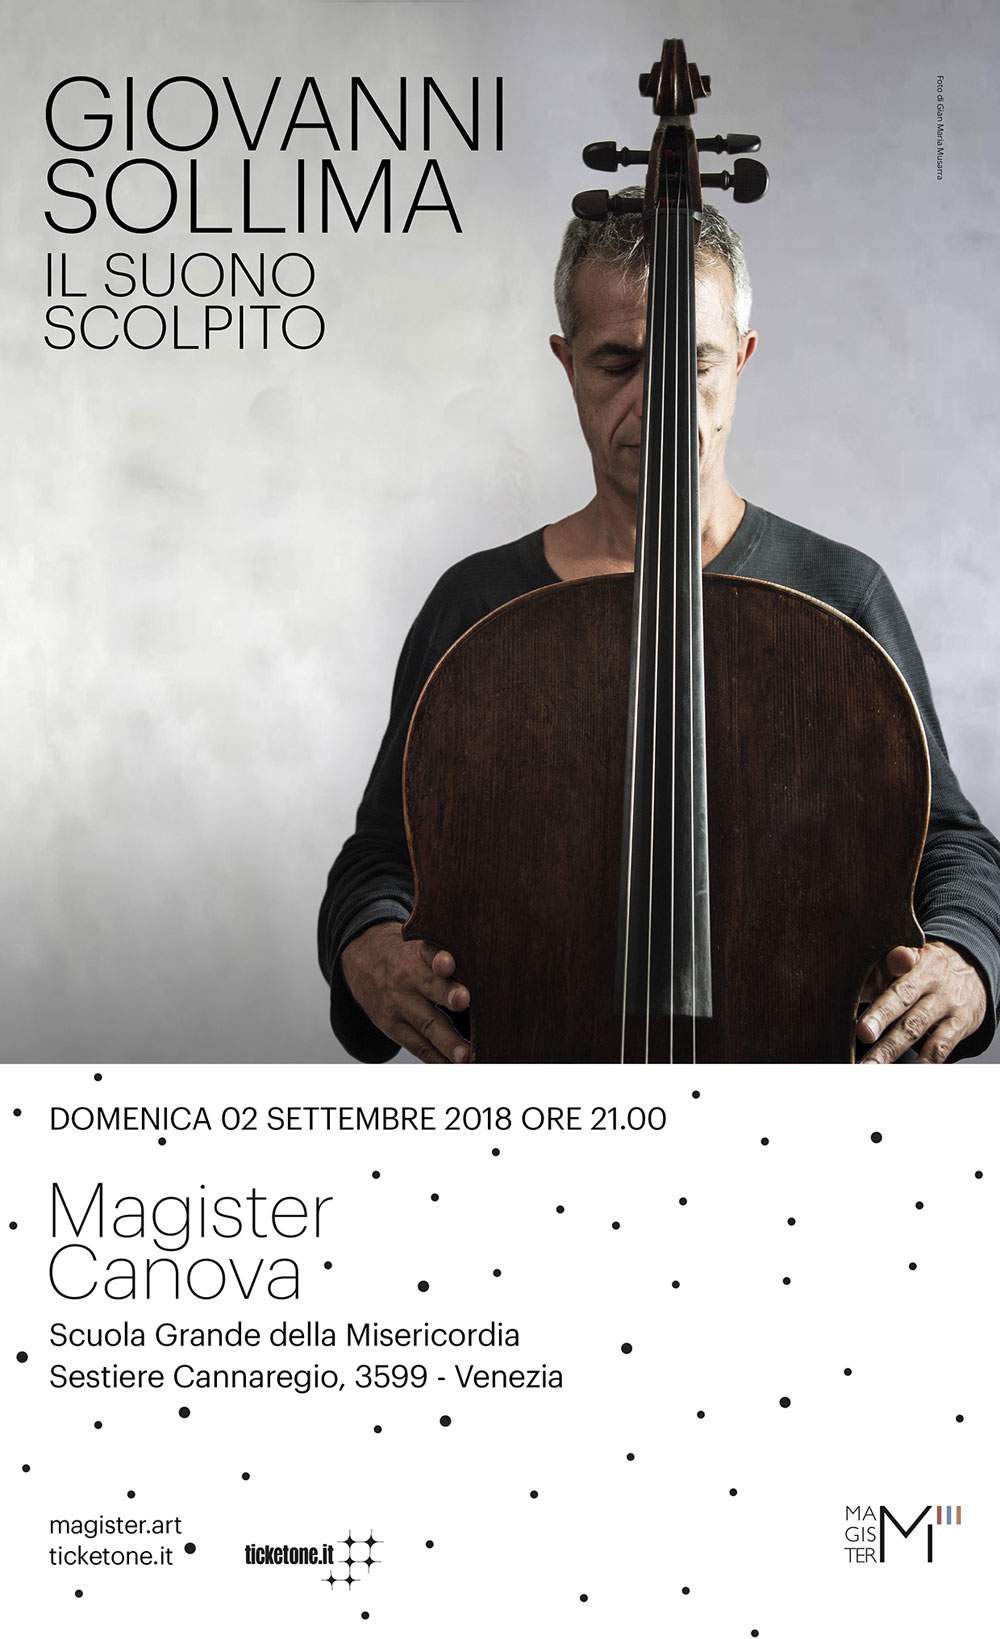 Esclusivo concerto di Giovanni Sollima in occasione di Magister Canova 